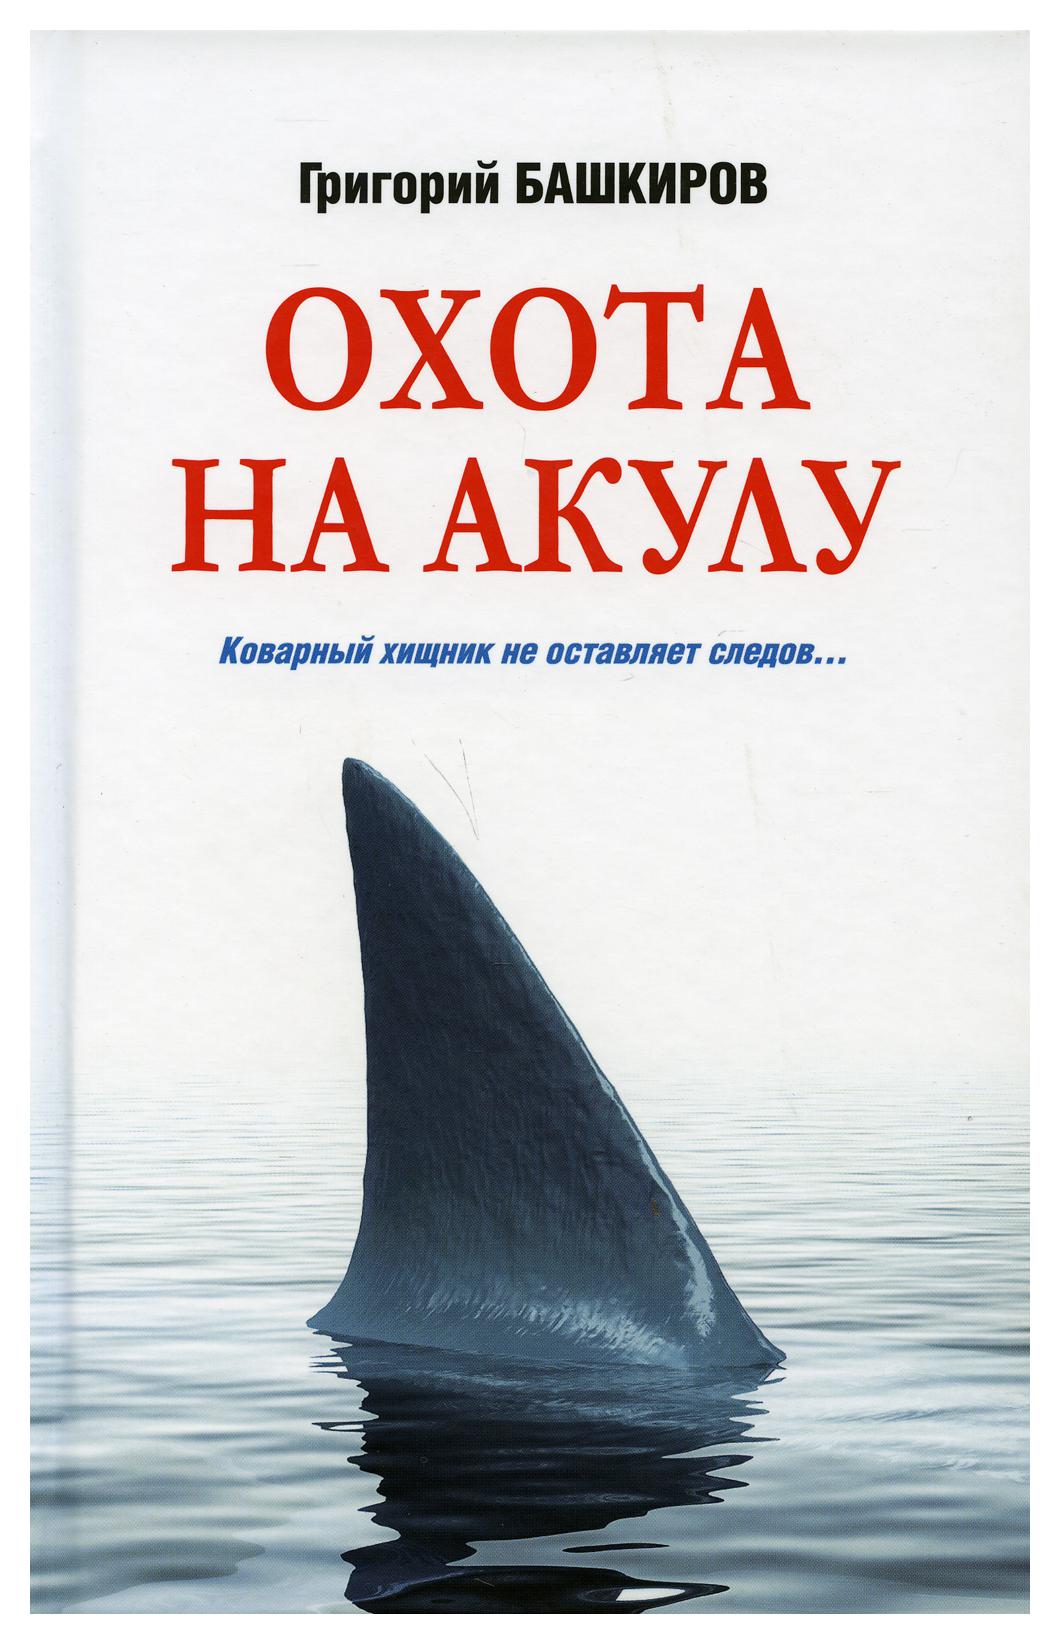 фото Книга охота на акулу вече